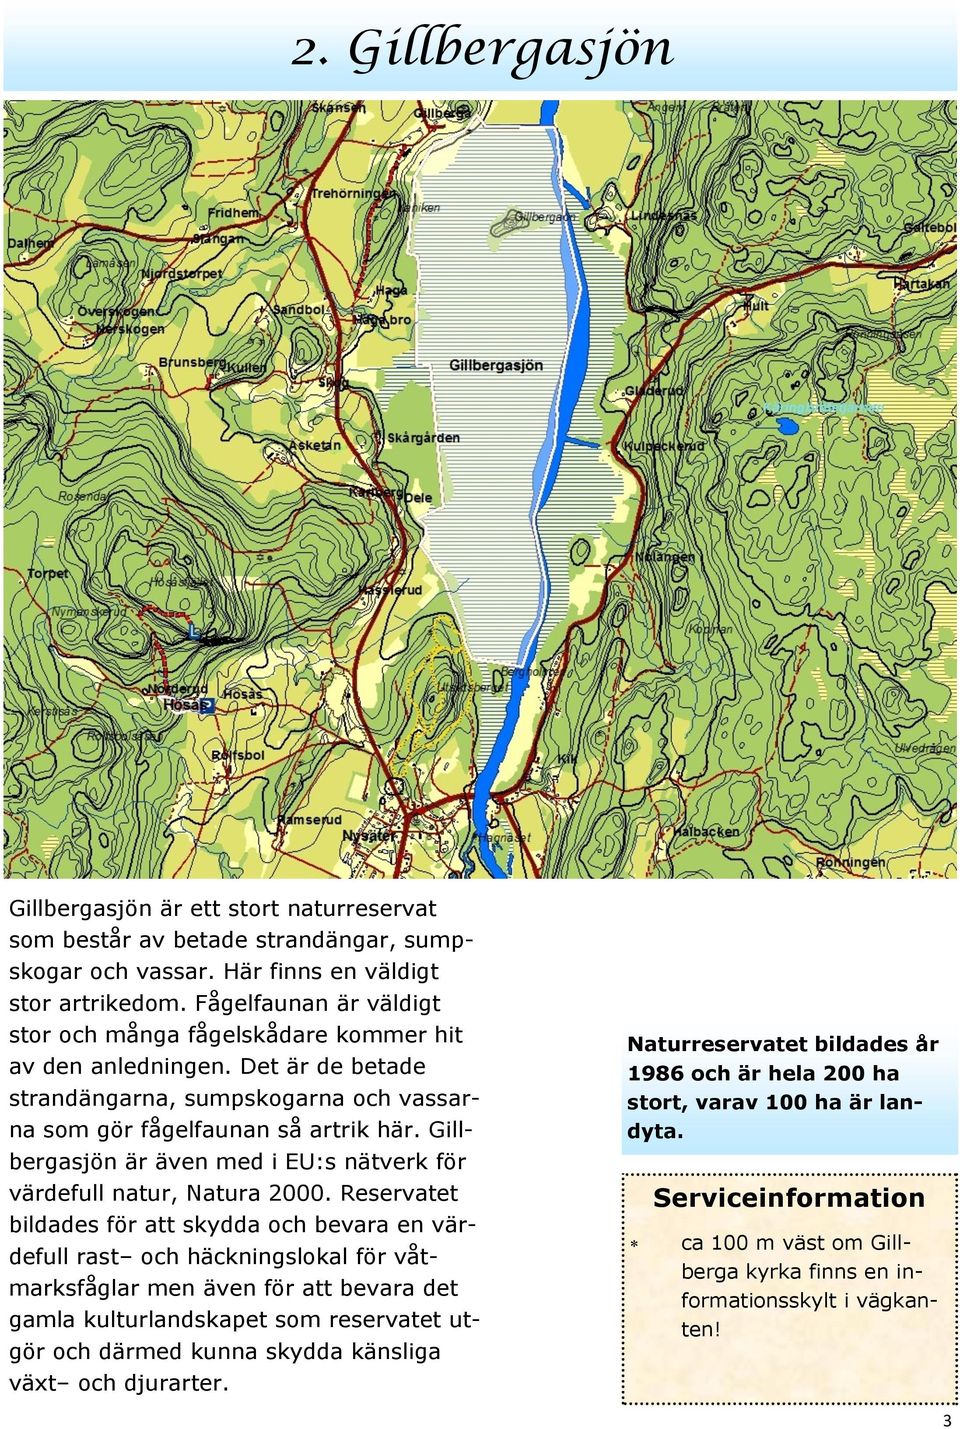 Gillbergasjön är även med i EU:s nätverk för värdefull natur, Natura 2000.